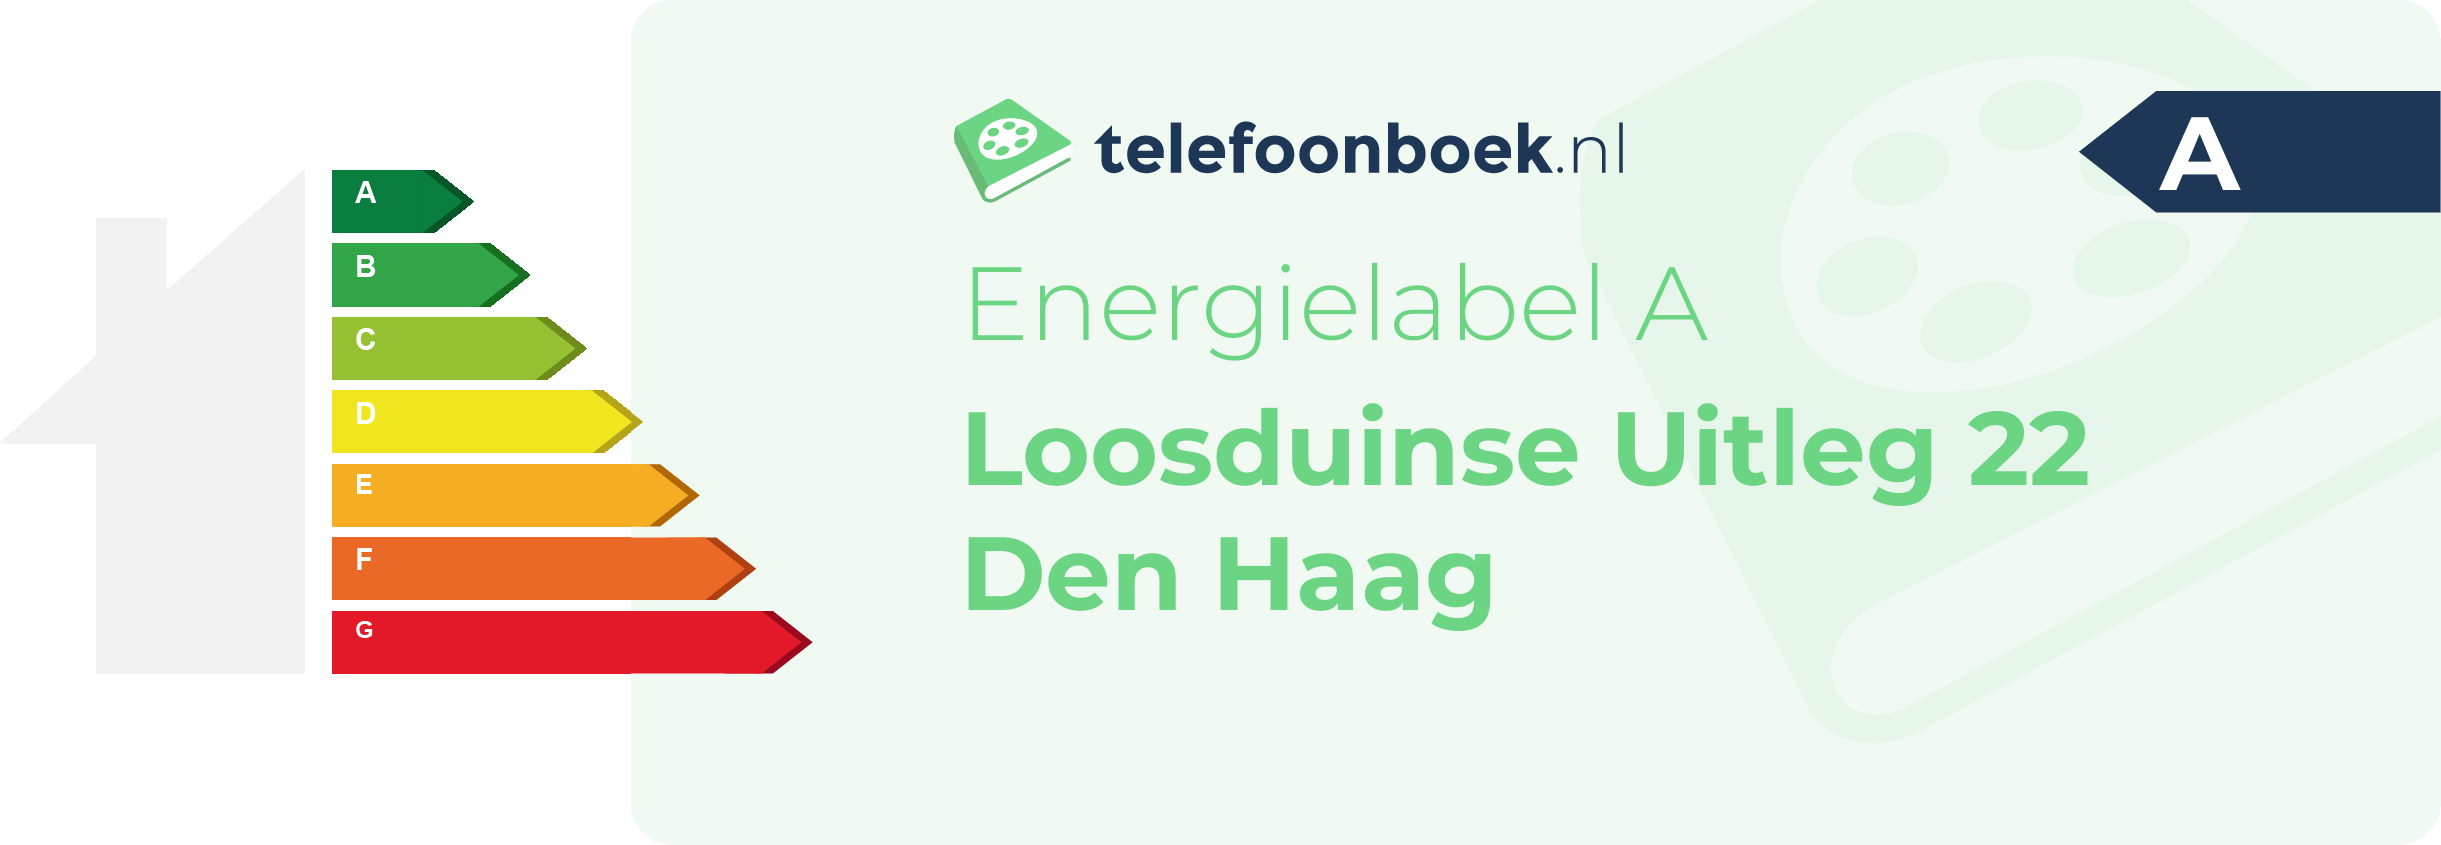 Energielabel Loosduinse Uitleg 22 Den Haag